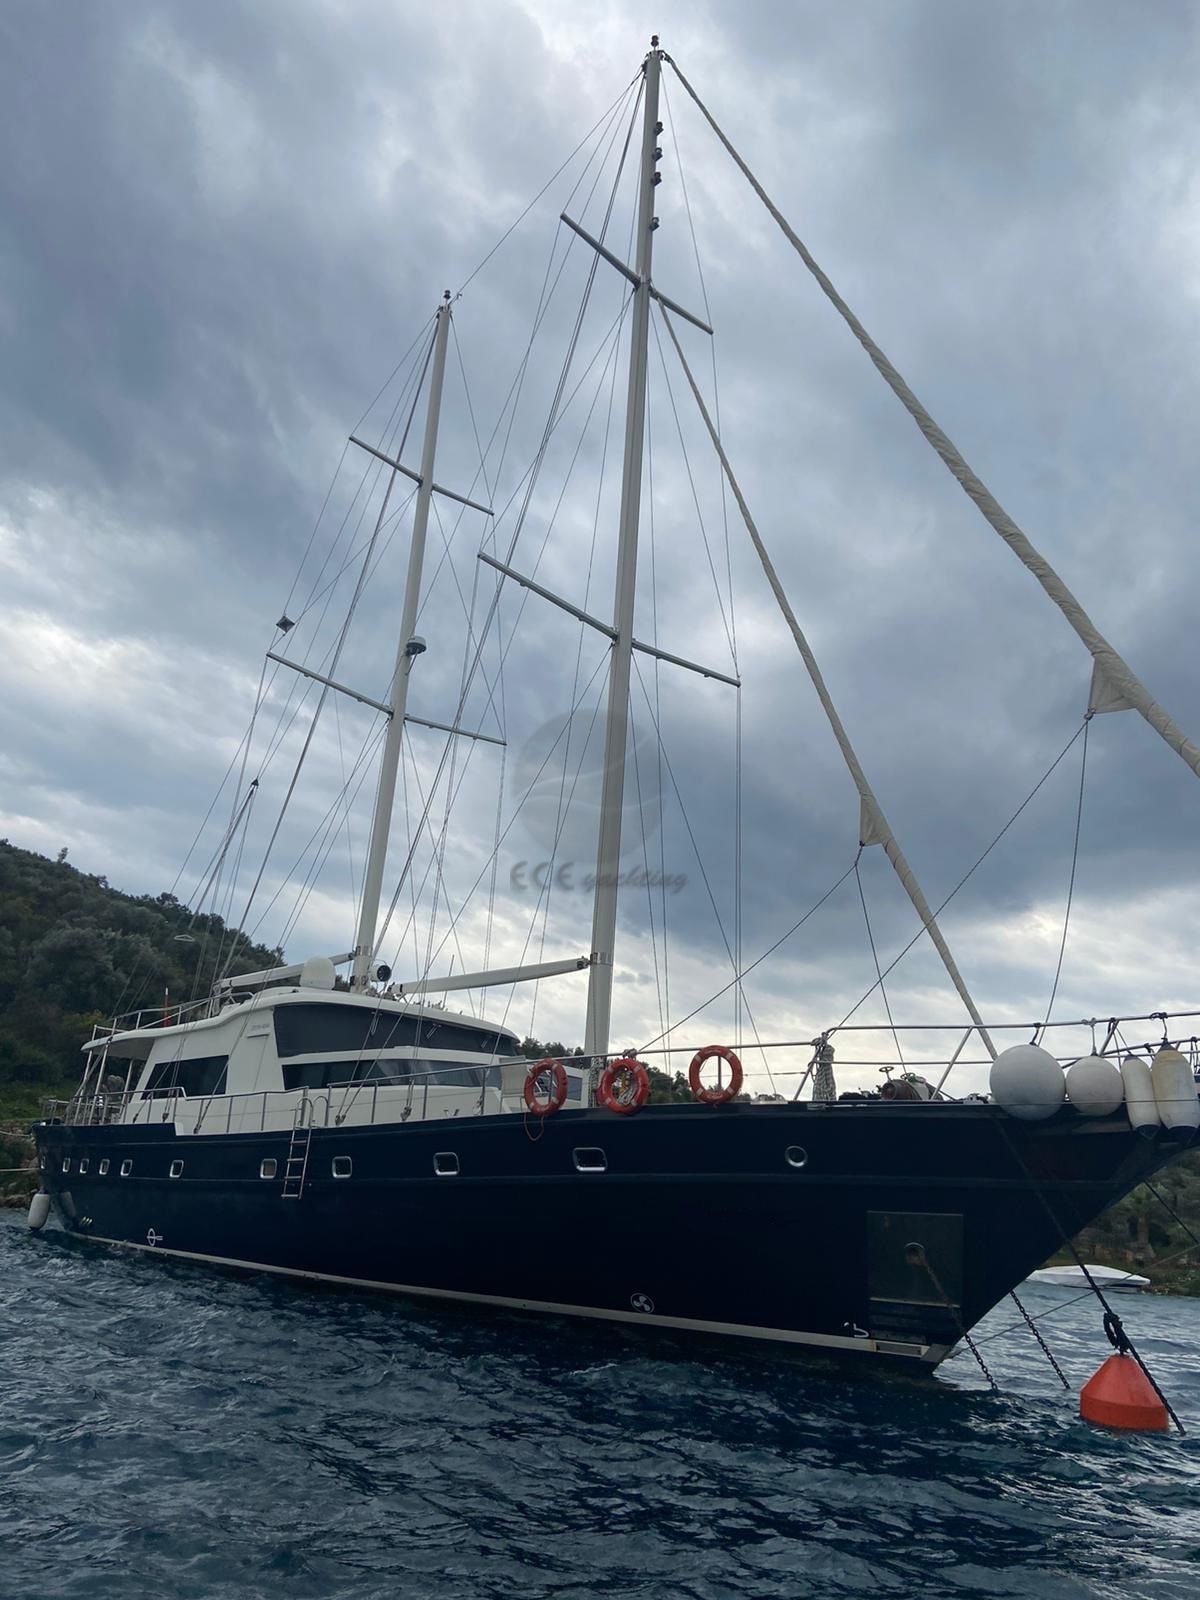 Zeytin Adasi Yacht, Sailing From Gocek.